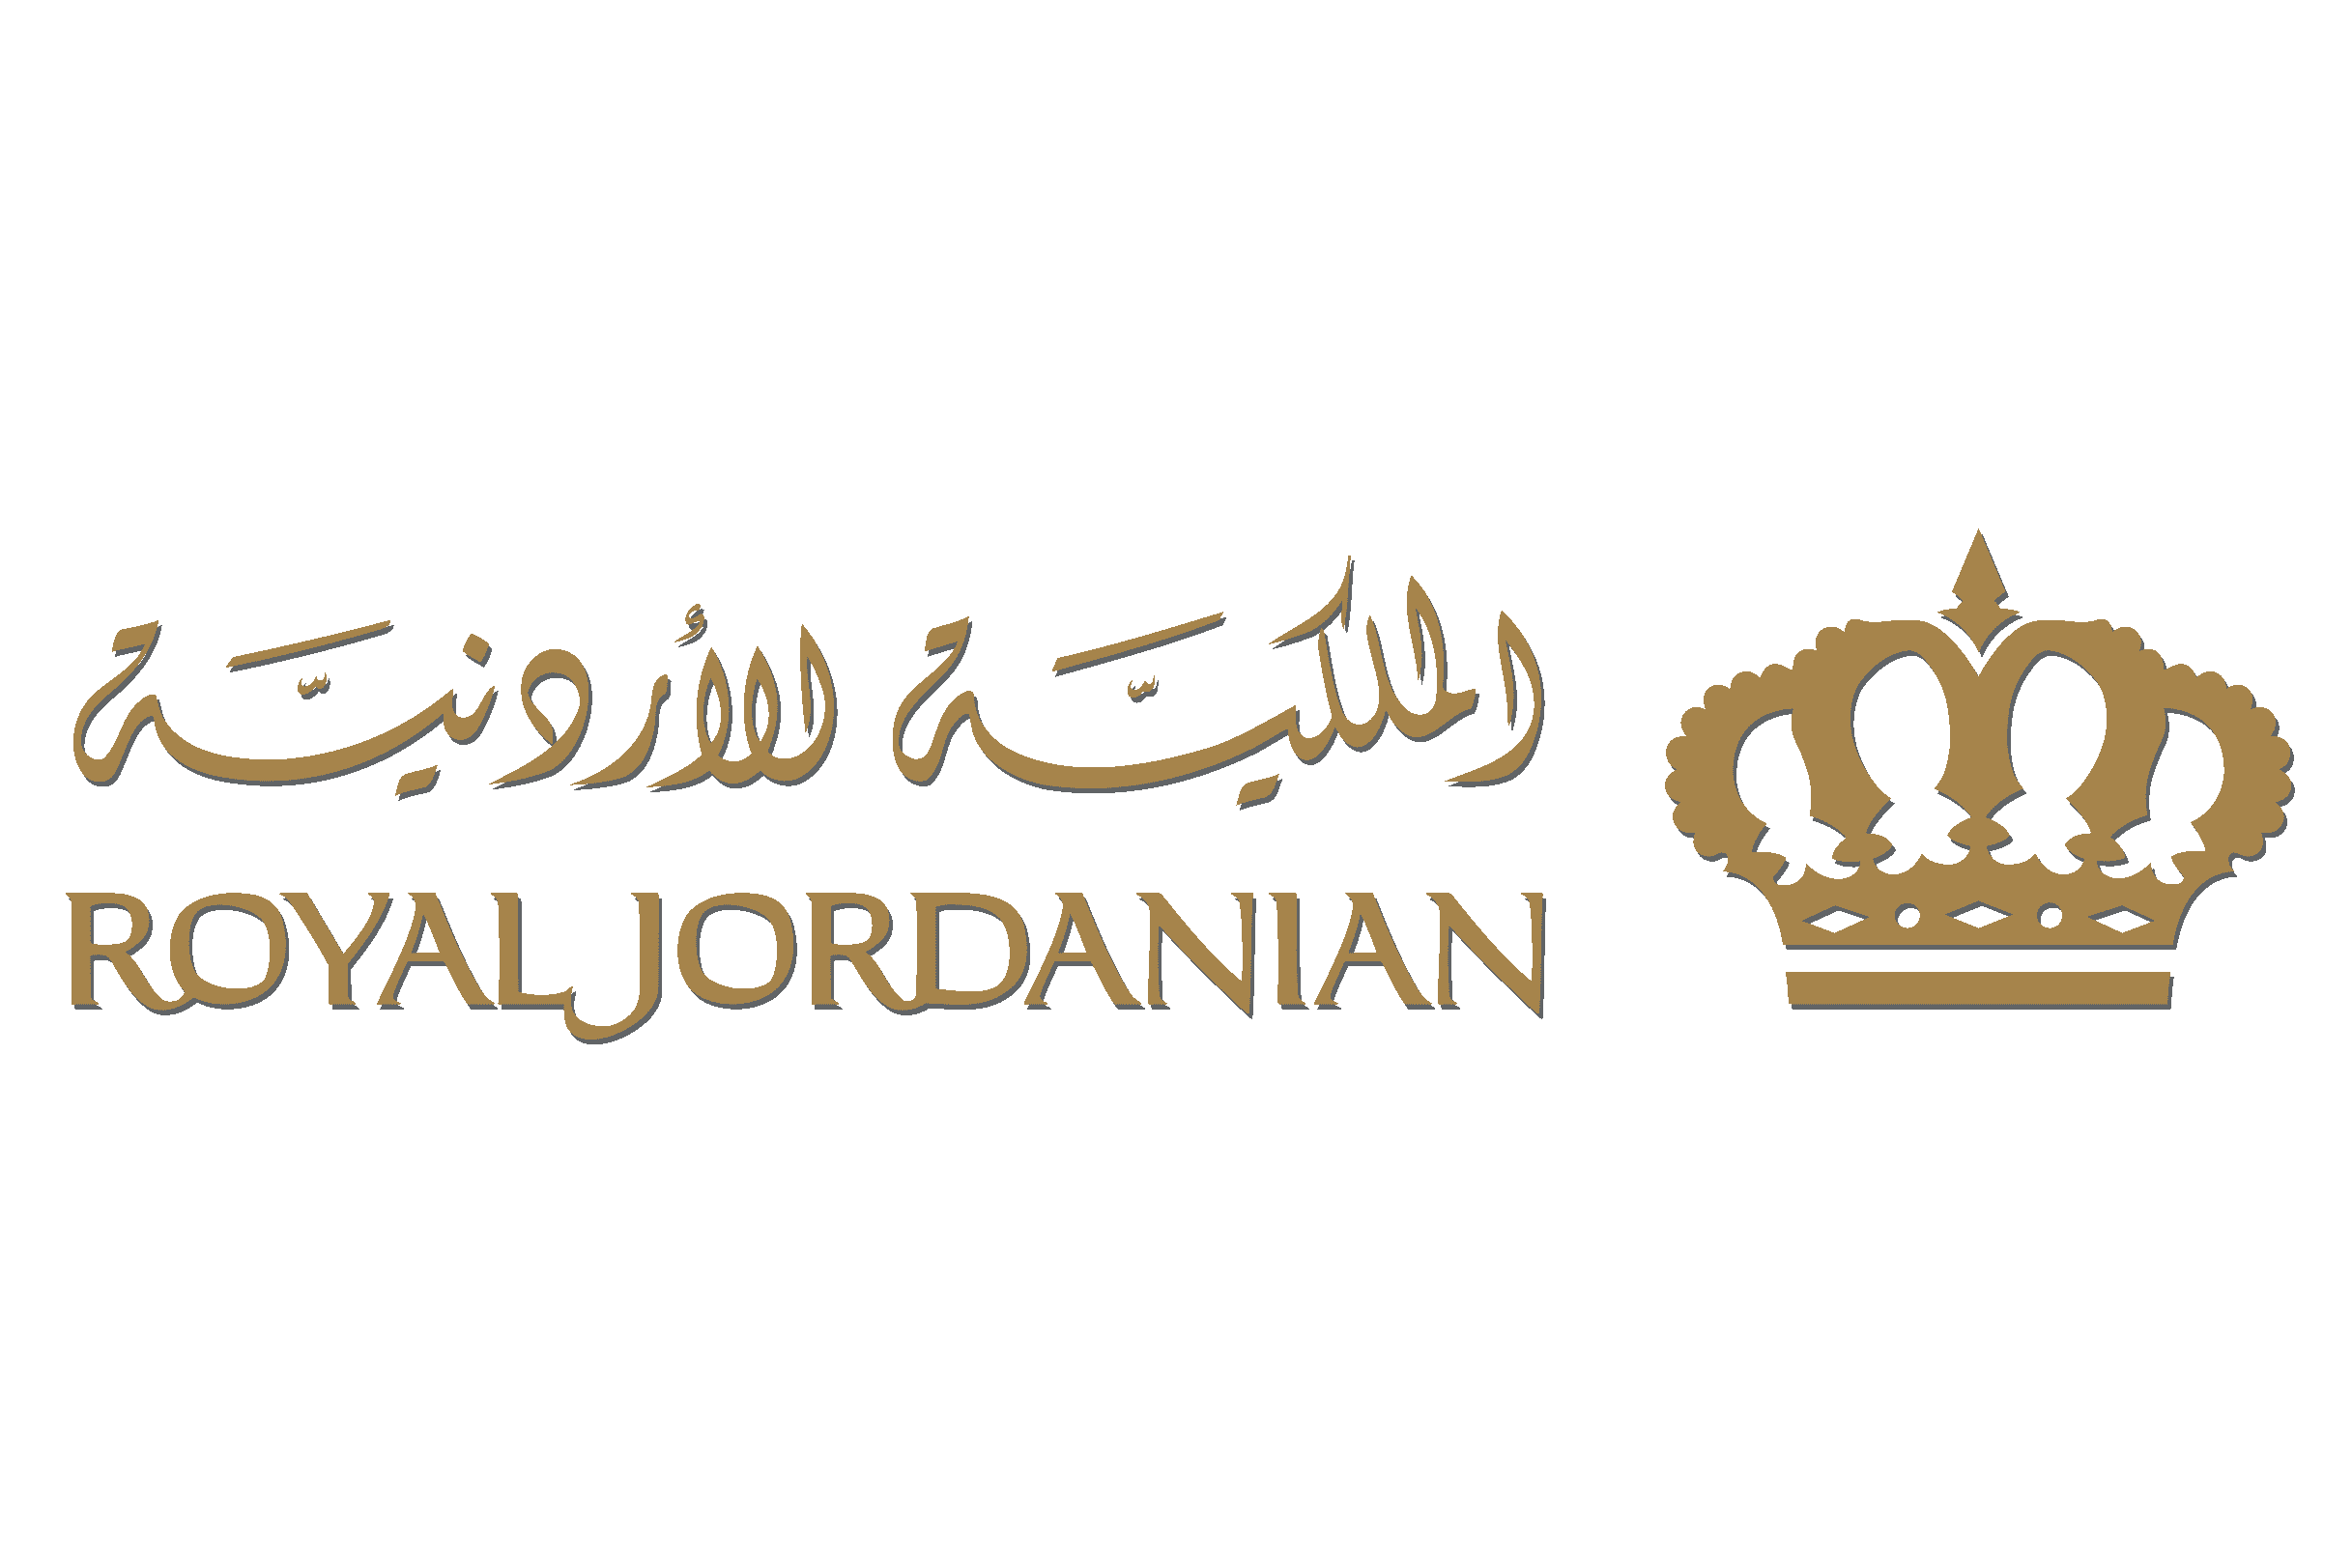 National airline of Jordan - Royal Jordanian